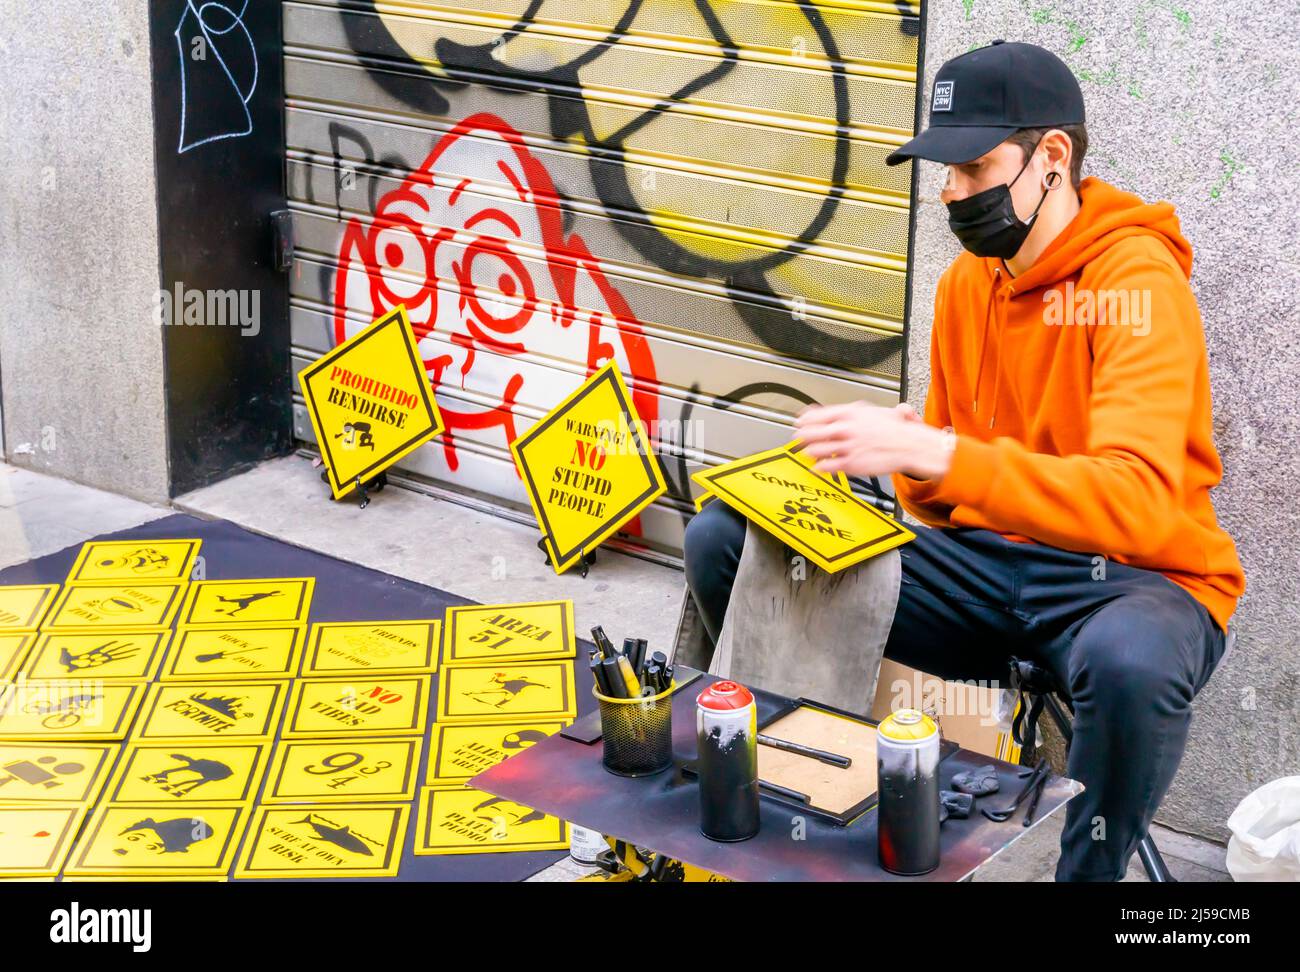 Artiste de rue dans le masque de visage peinture de panneaux de rue rombiques jaunes et les vendant sur le terrain à c Fuencarral, Malasana, Madrid, Espagne Banque D'Images